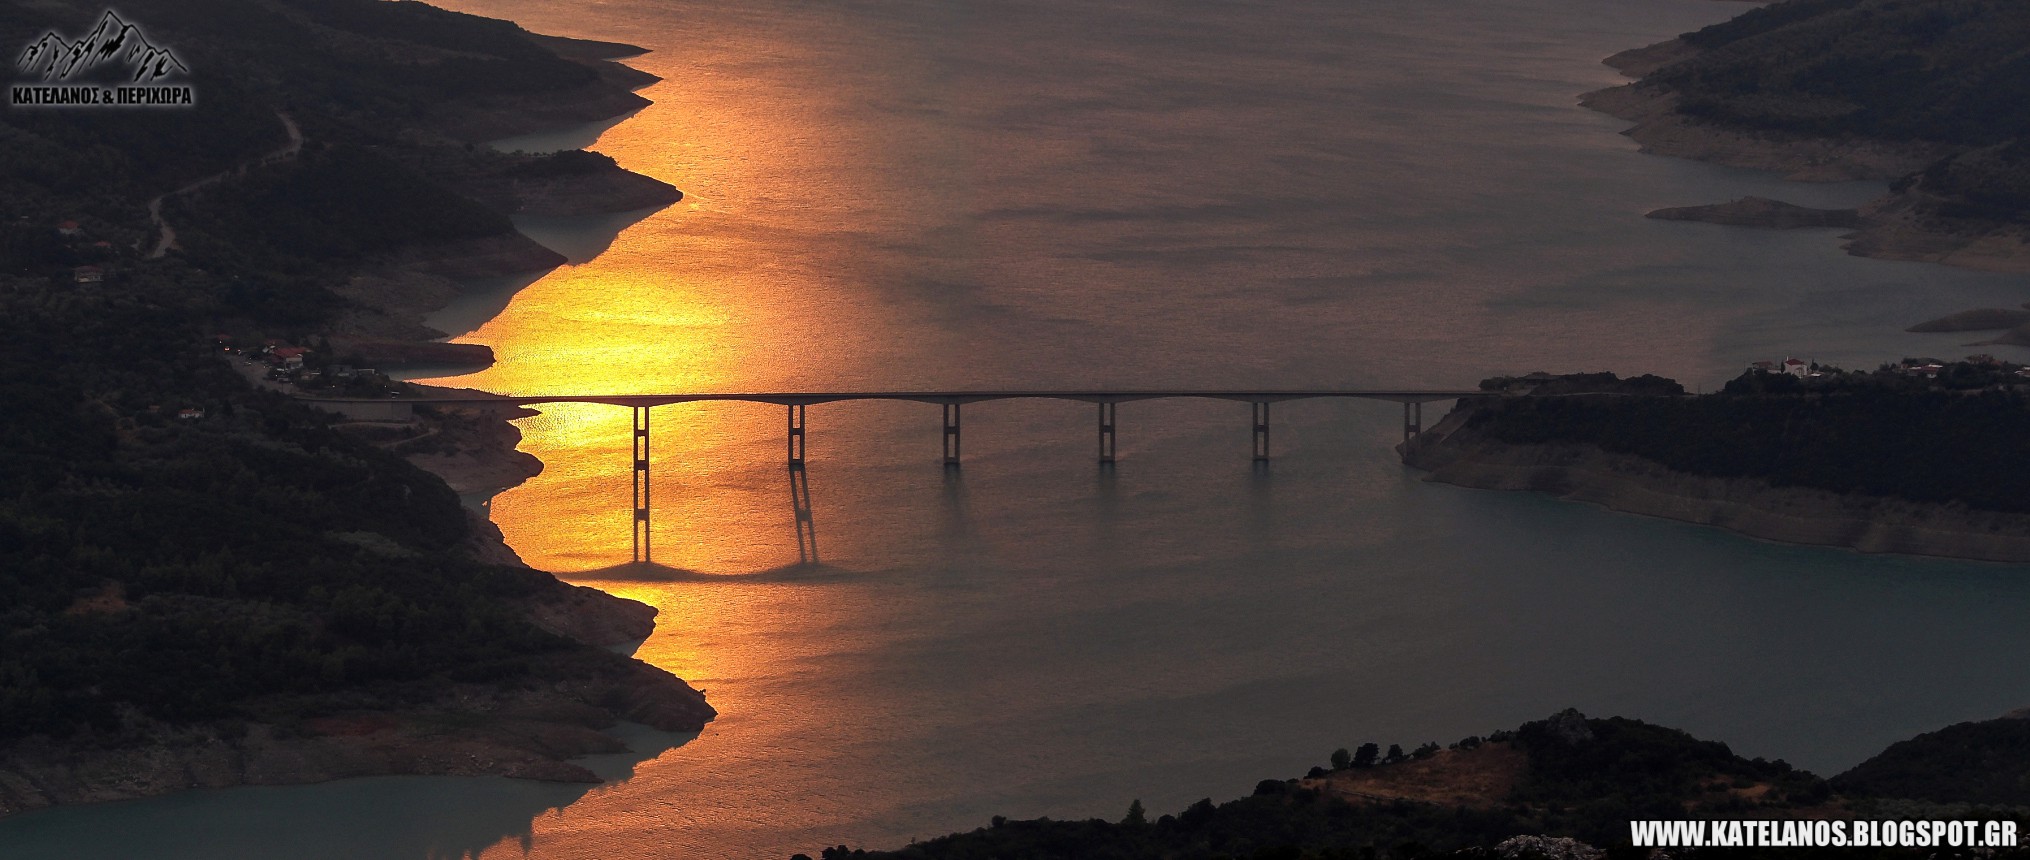 τεχνητη λιμνη κρεμαστων ευρυτανια φιδακια τσαγκαράλωνα ηλιοβασιλεμα γεφυρα επισκοπης